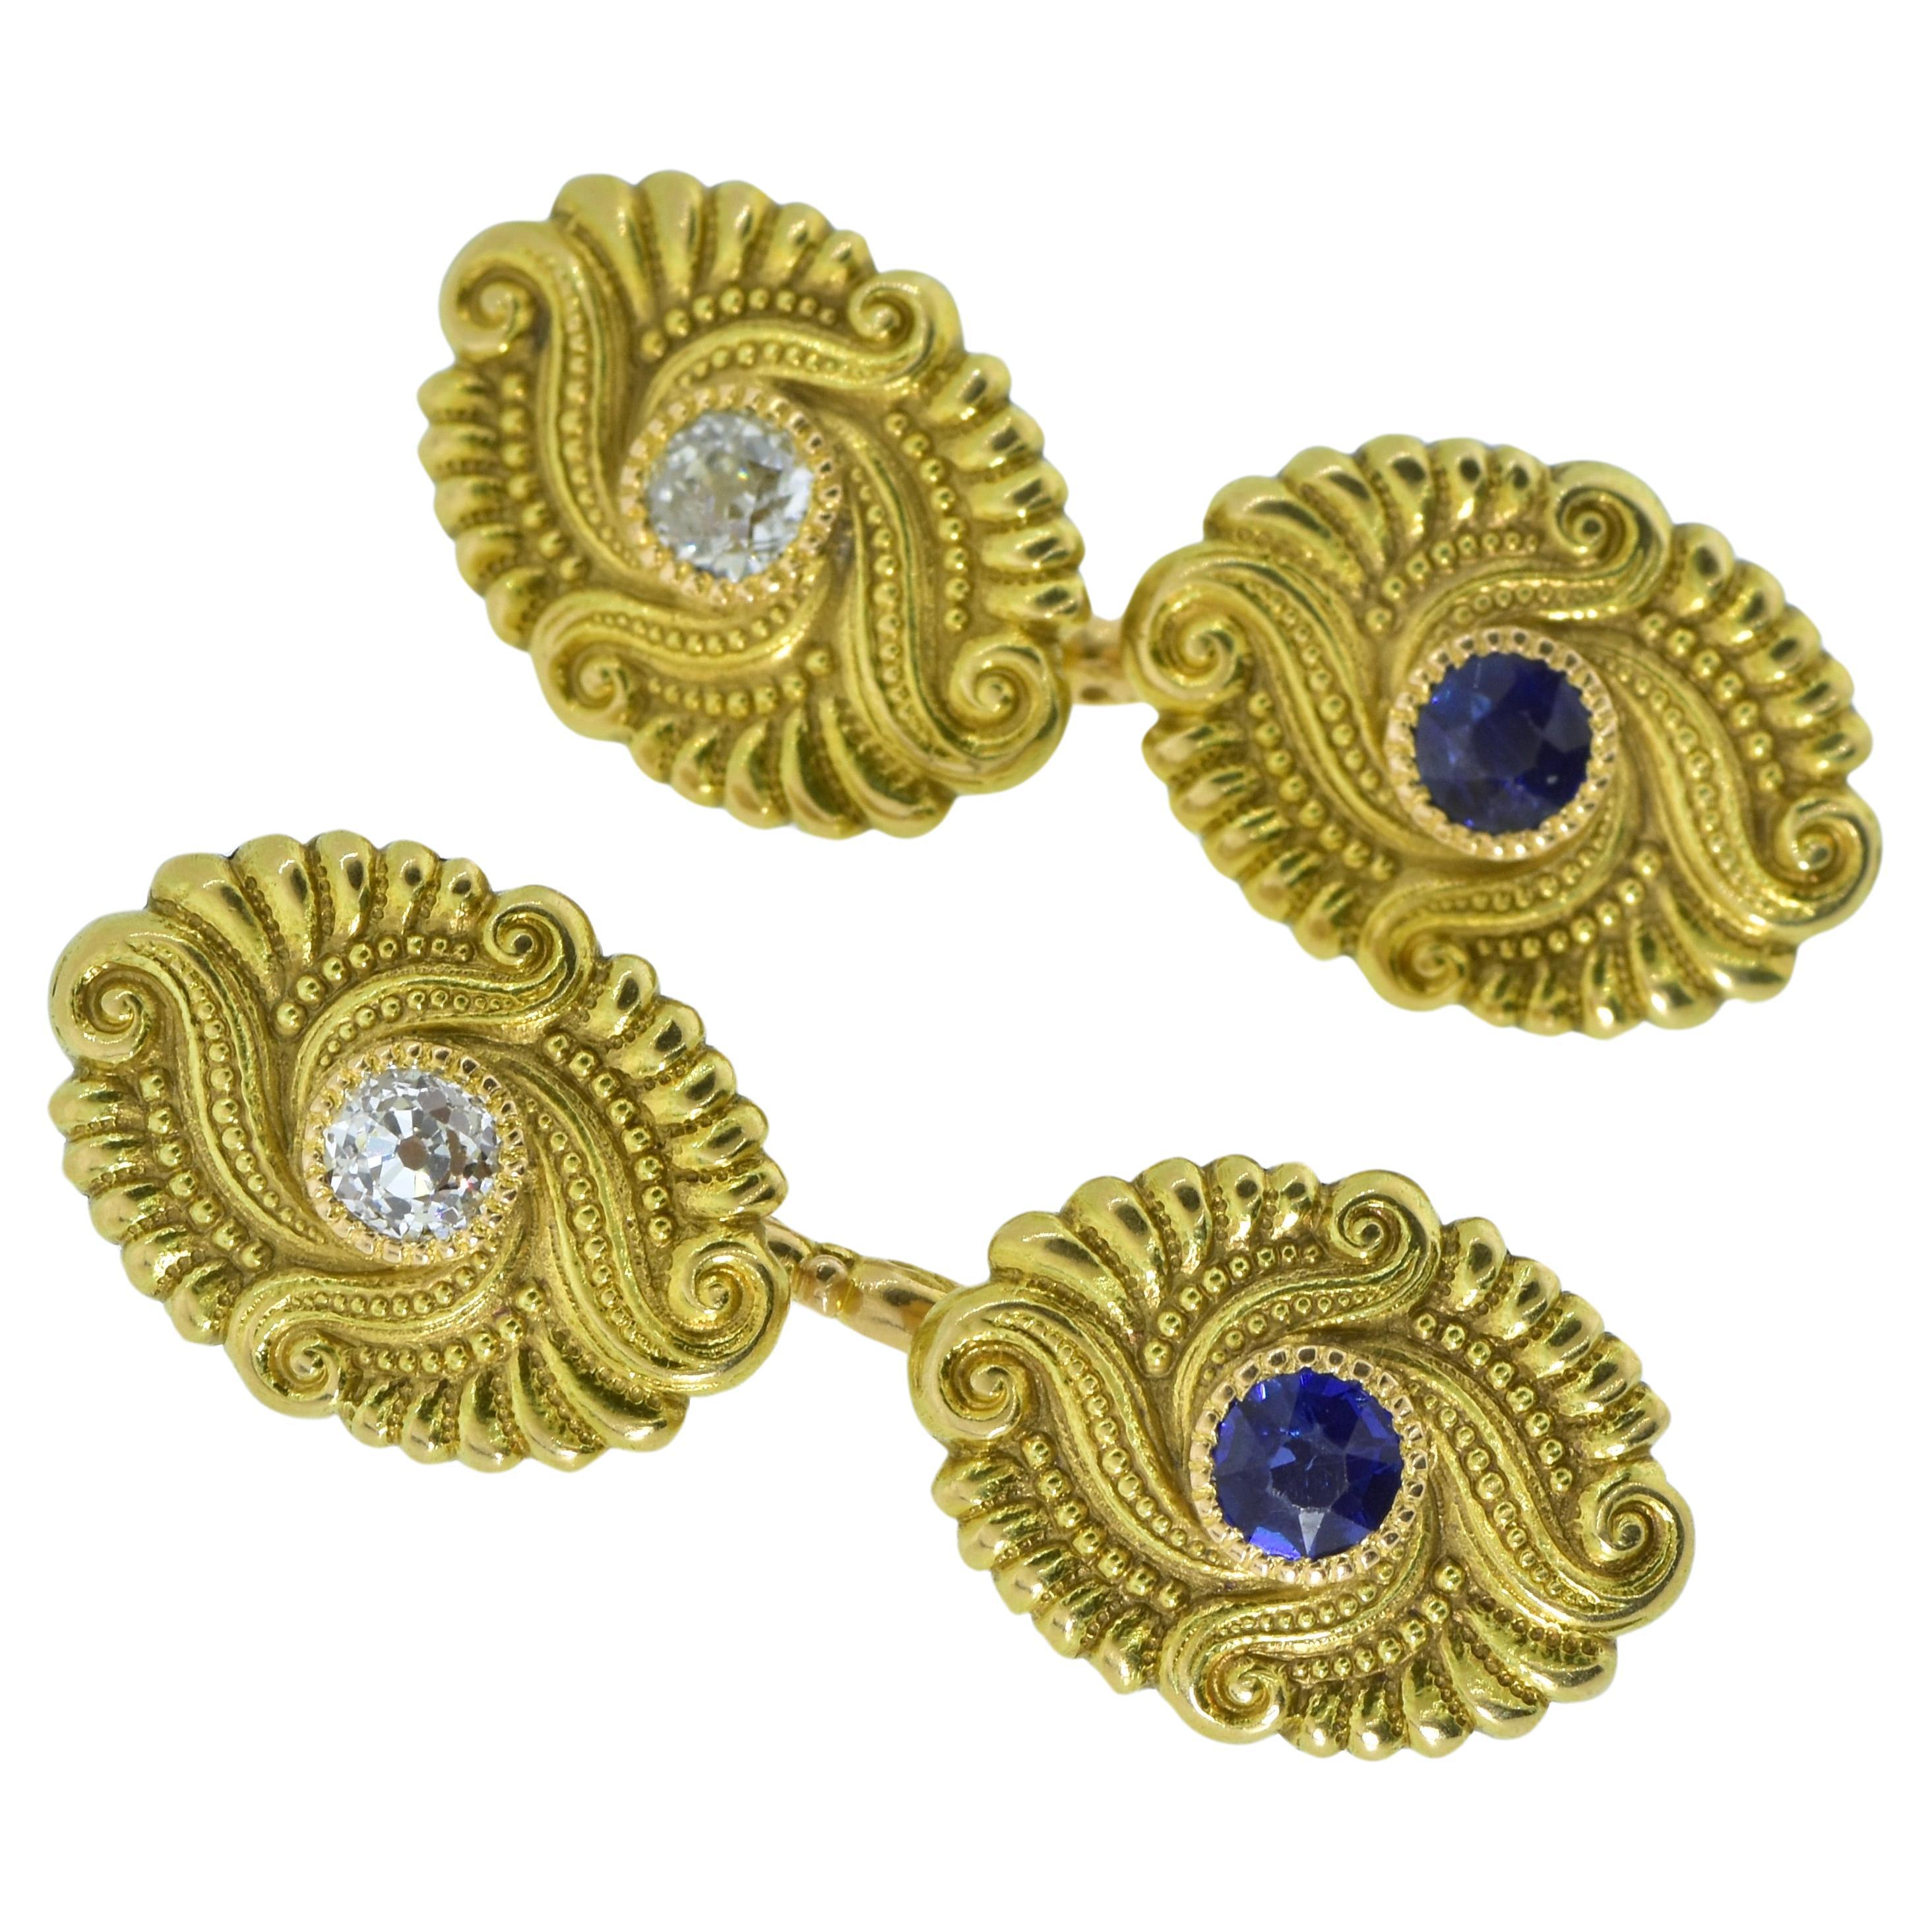 Gemelli da polso in oro antico con zaffiro e diamante, Art Nouveau, 1900 ca.